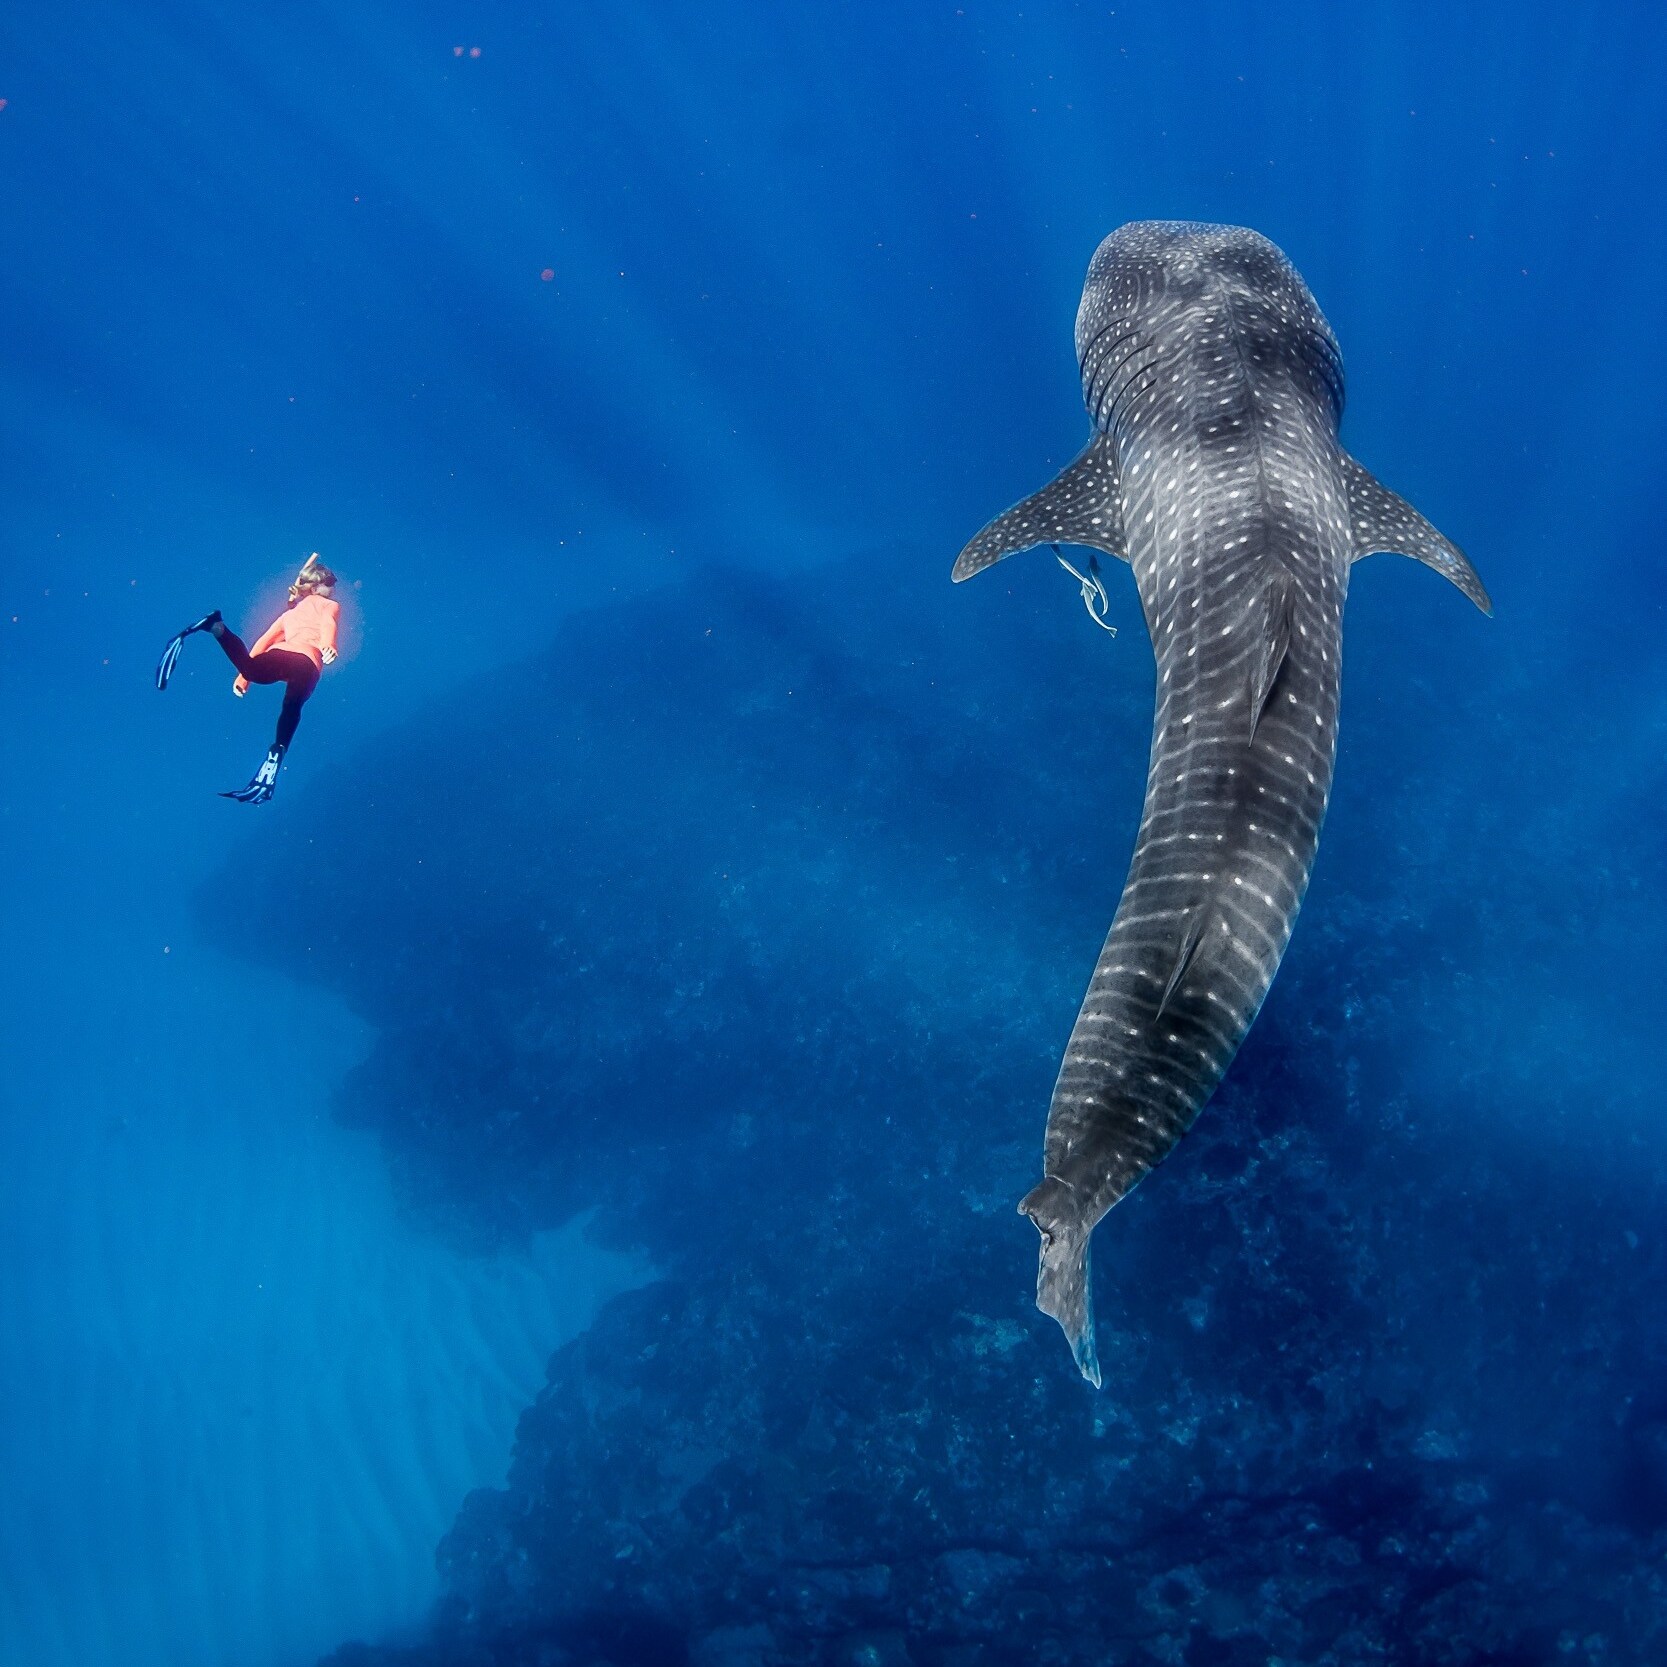 엑스머스 부근에서 고래 상어 옆에서 수영하고 있는 스노클러 © 크리스 젠슨(Chris Jansen) / 라이브 닝갈루